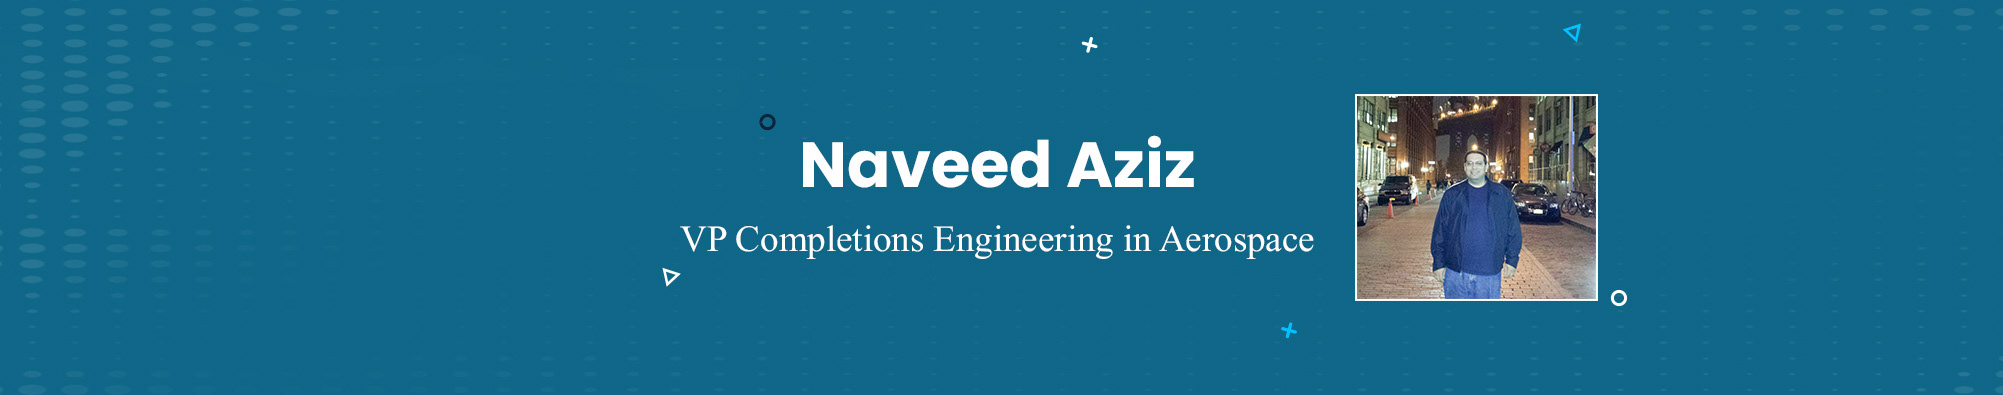 Naveed Aziz's profile banner